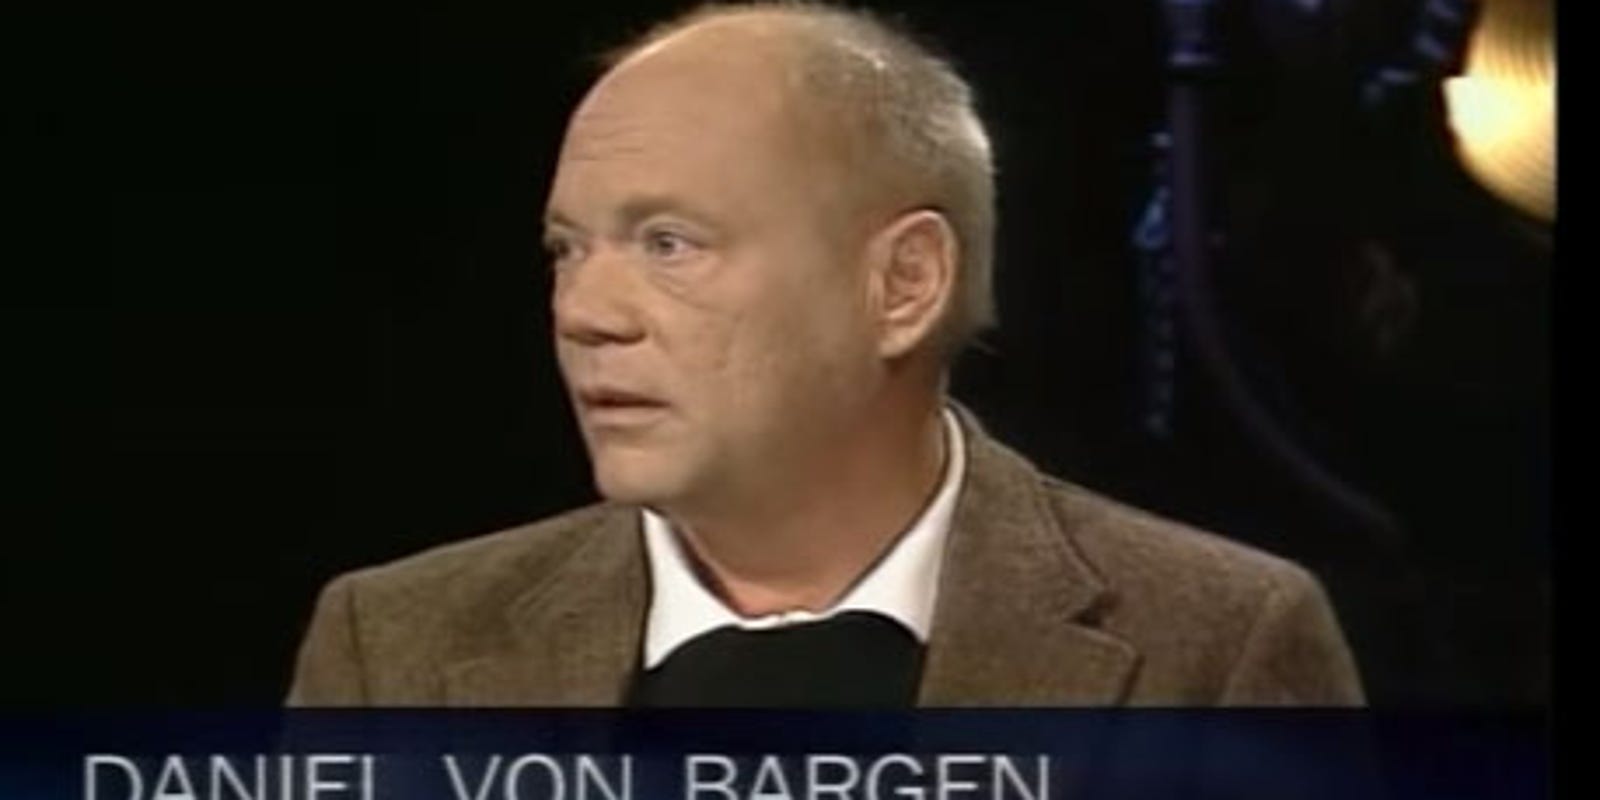 1600px x 800px - Seinfeld' actor Daniel von Bargen dies at 64